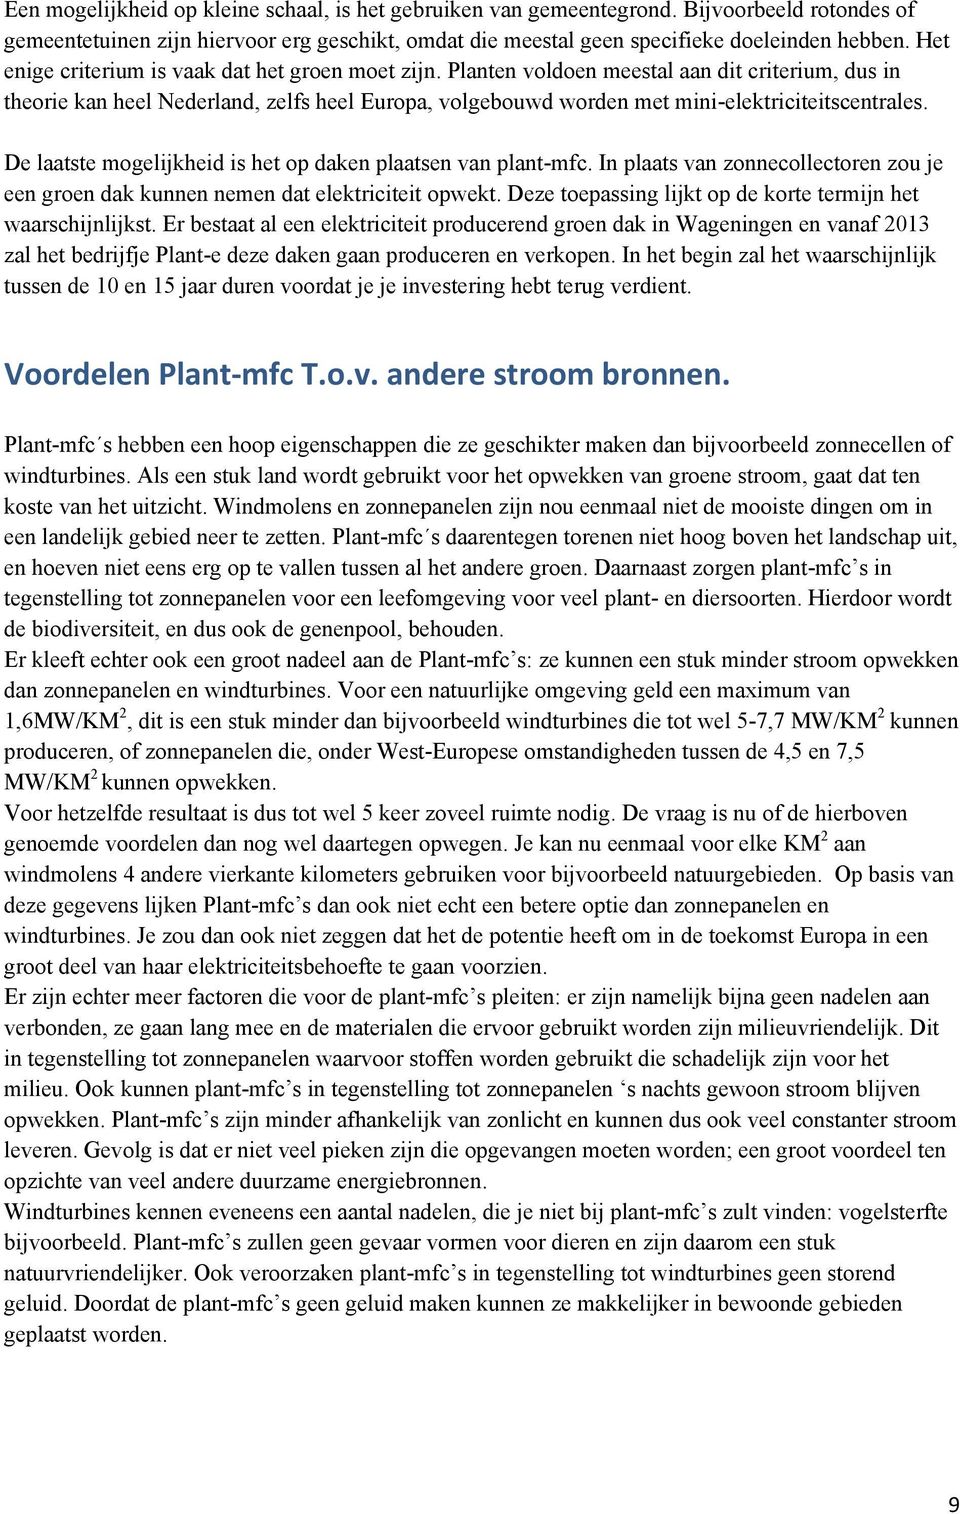 Planten voldoen meestal aan dit criterium, dus in theorie kan heel Nederland, zelfs heel Europa, volgebouwd worden met mini-elektriciteitscentrales.